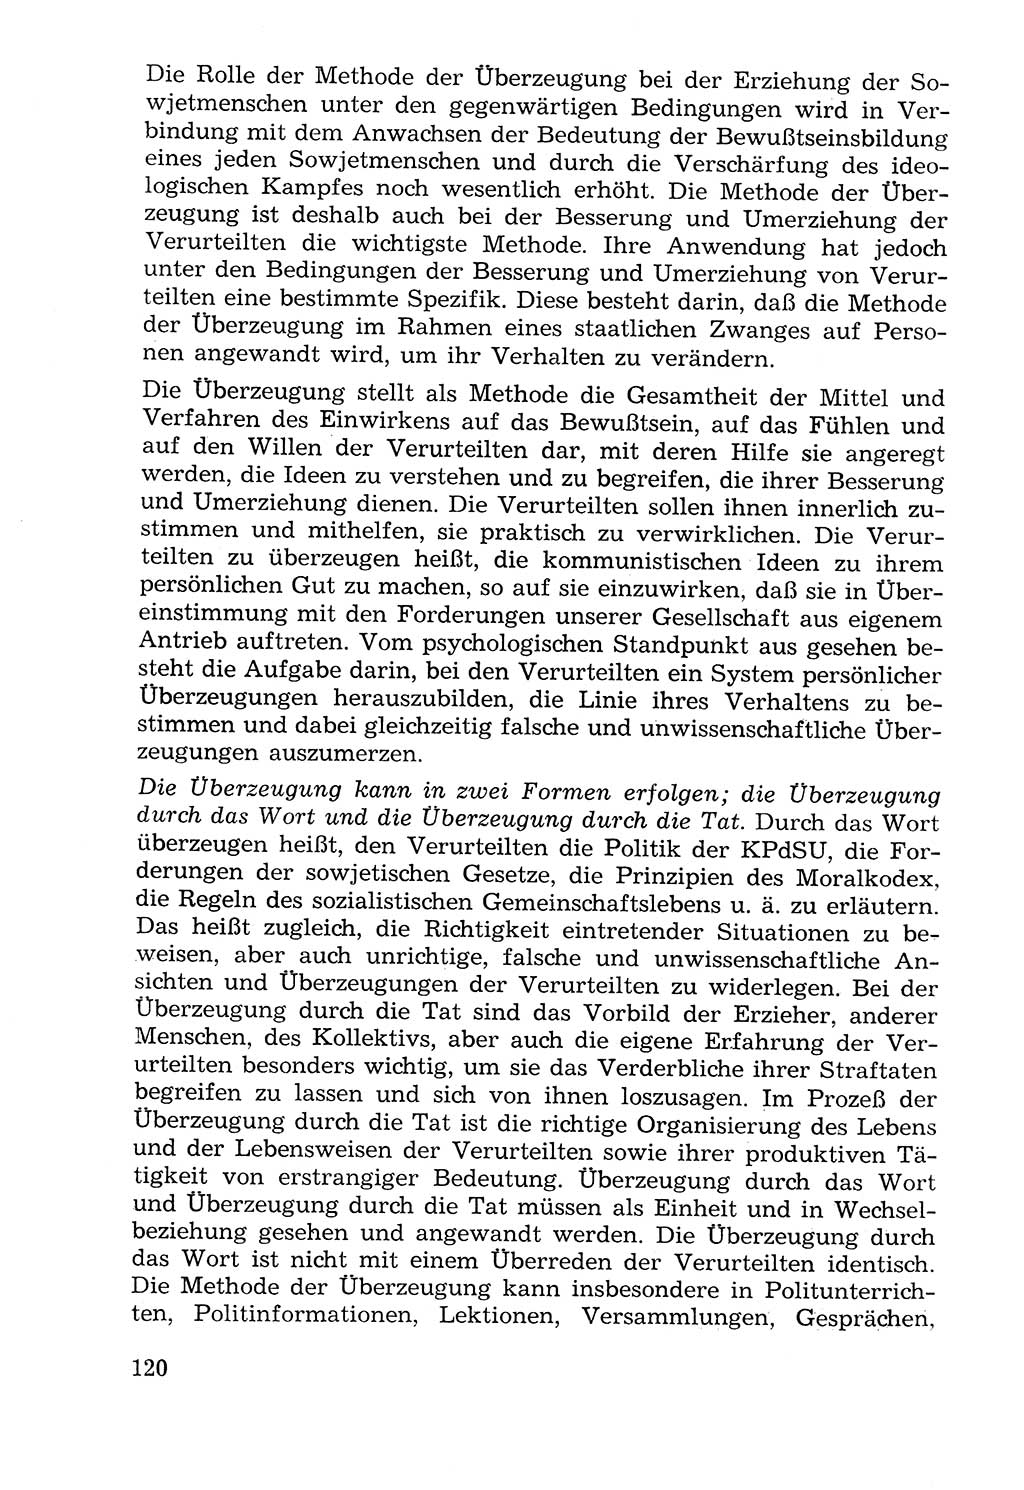 Lehrbuch der Strafvollzugspädagogik [Deutsche Demokratische Republik (DDR)] 1969, Seite 120 (Lb. SV-Pd. DDR 1969, S. 120)